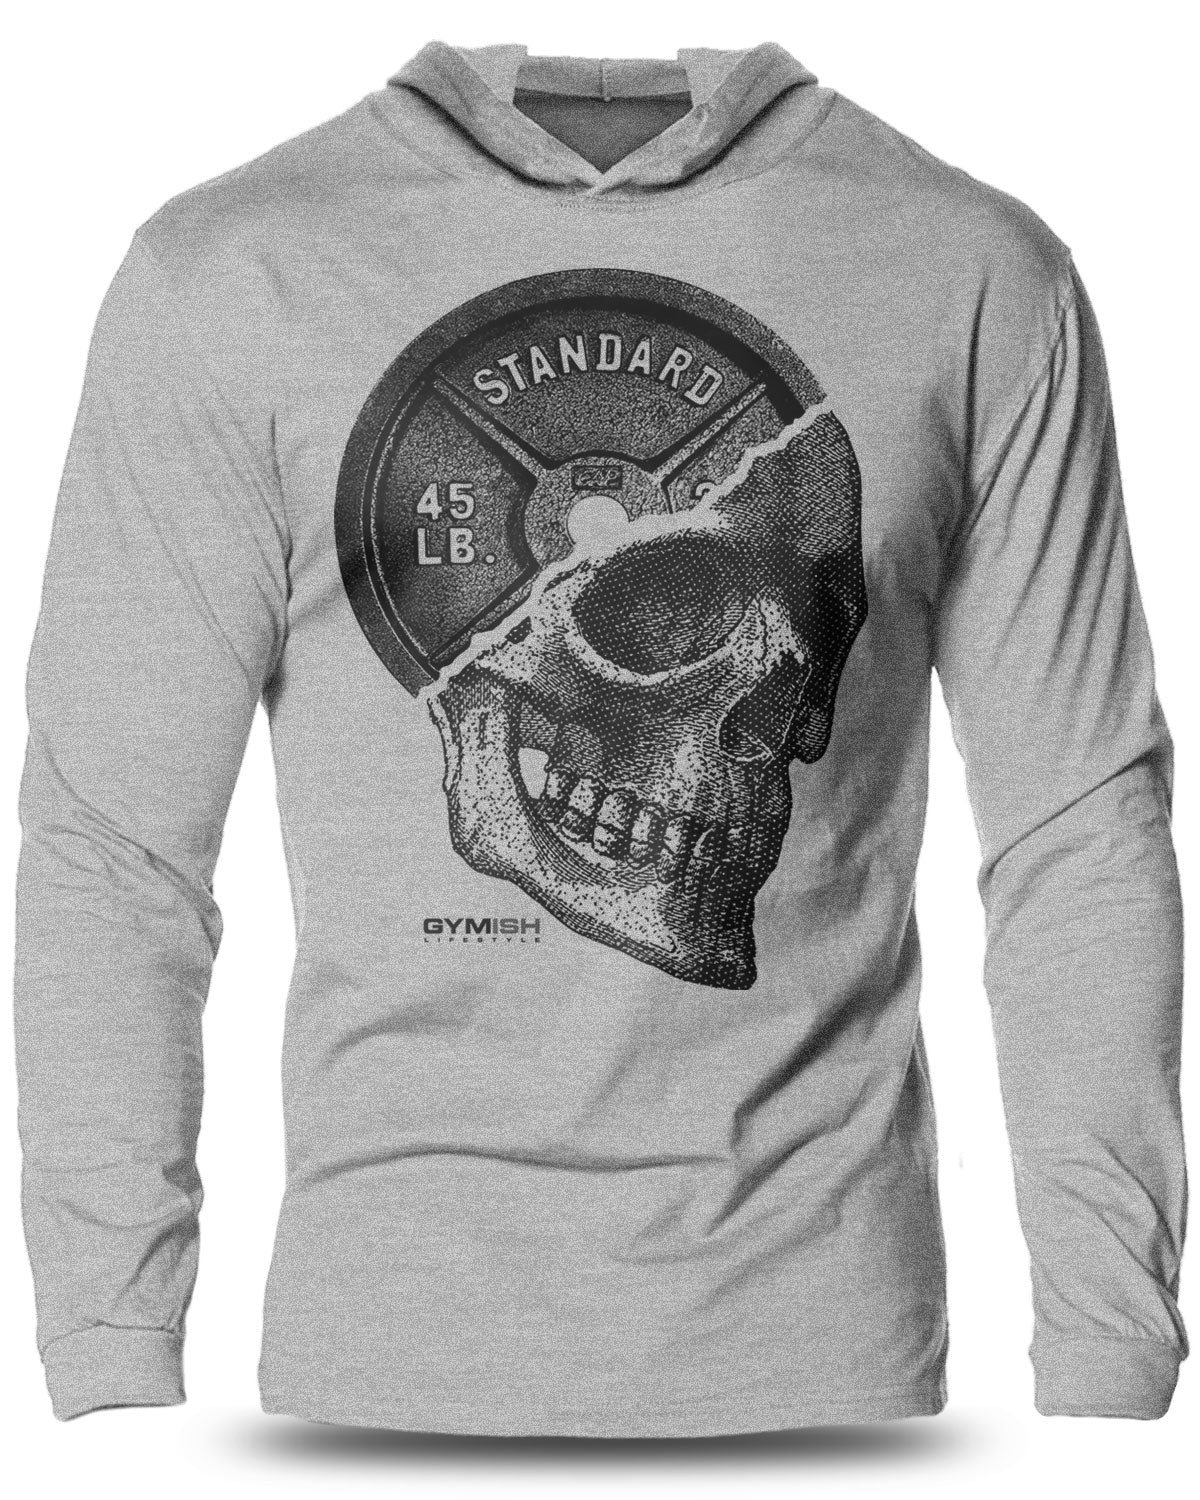 051- Skull Plate Lightweight Long Sleeve Hooded T-shirt for Men